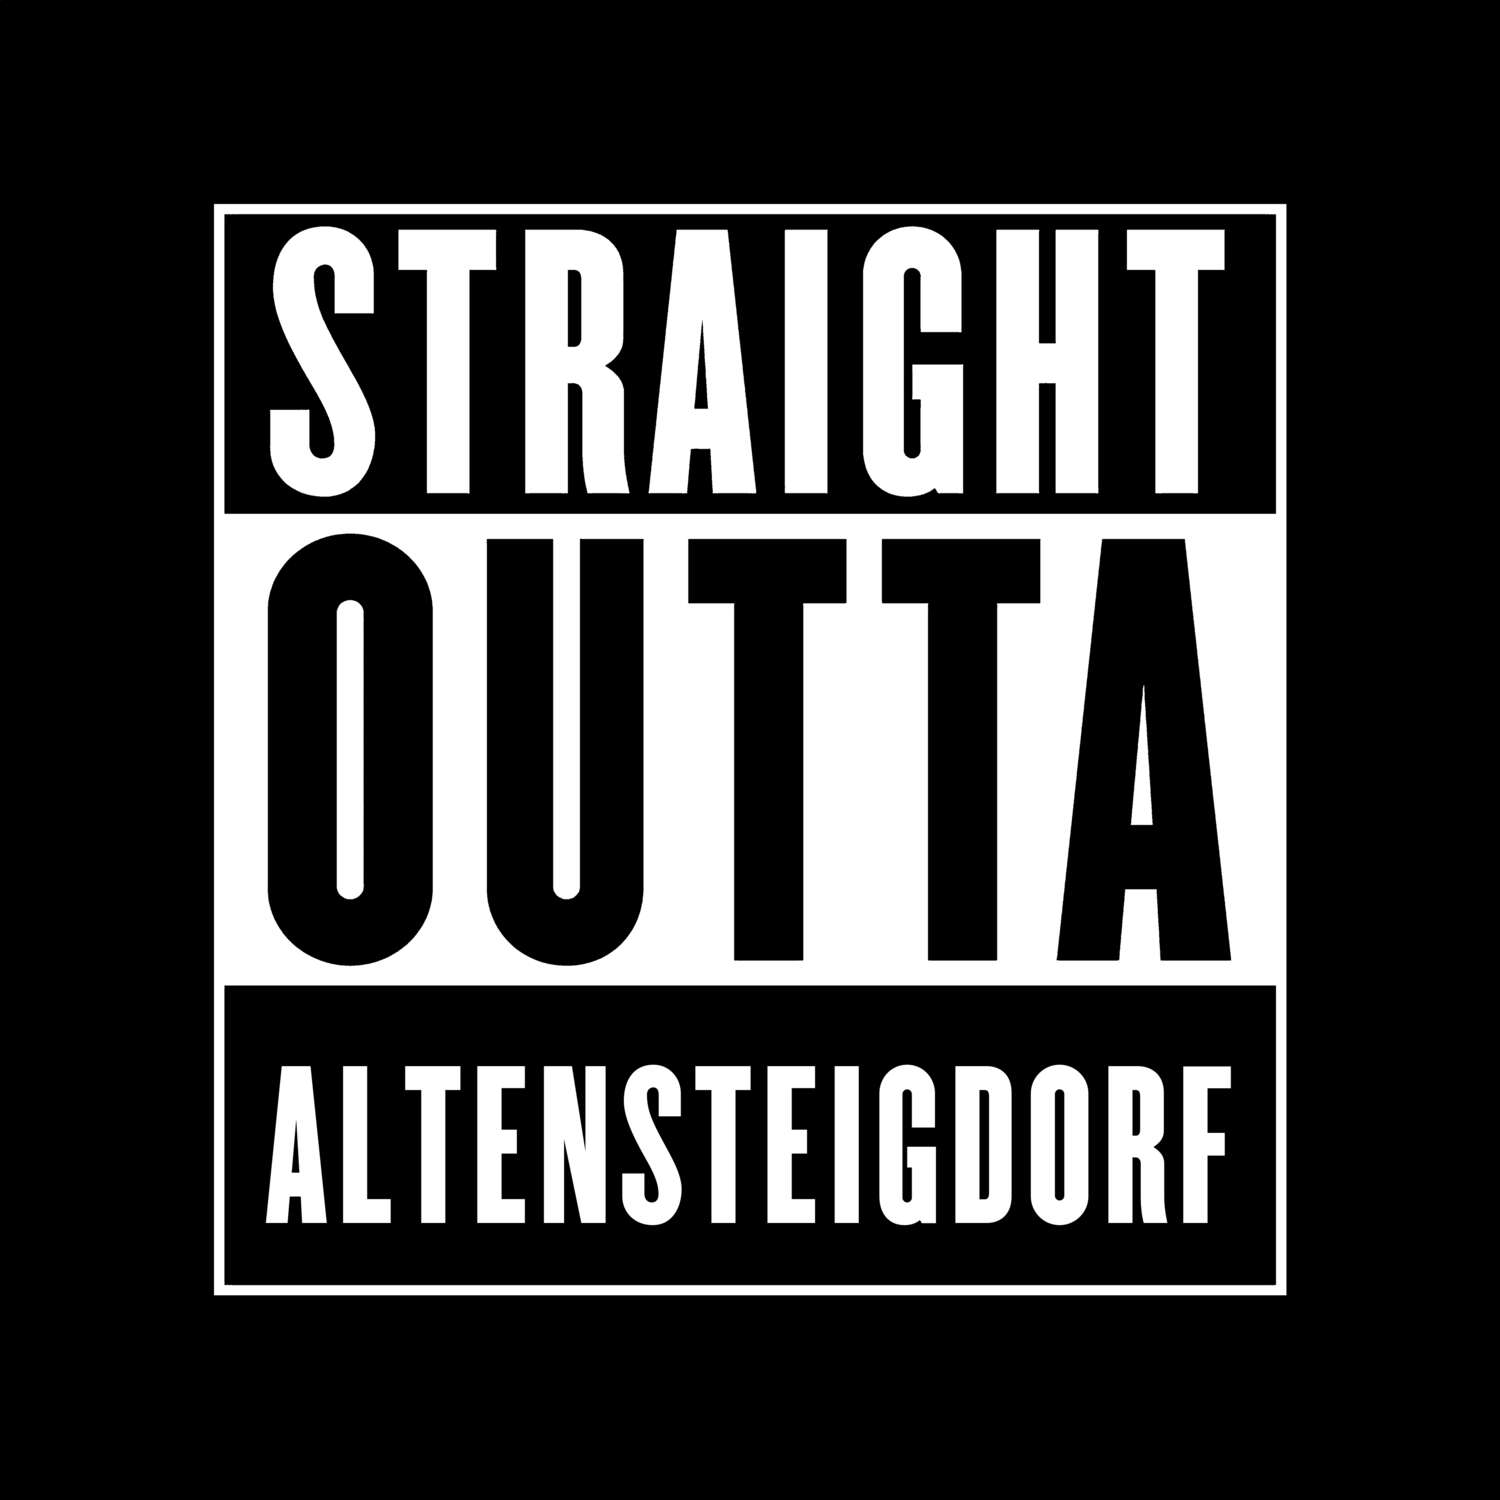 Altensteigdorf T-Shirt »Straight Outta«